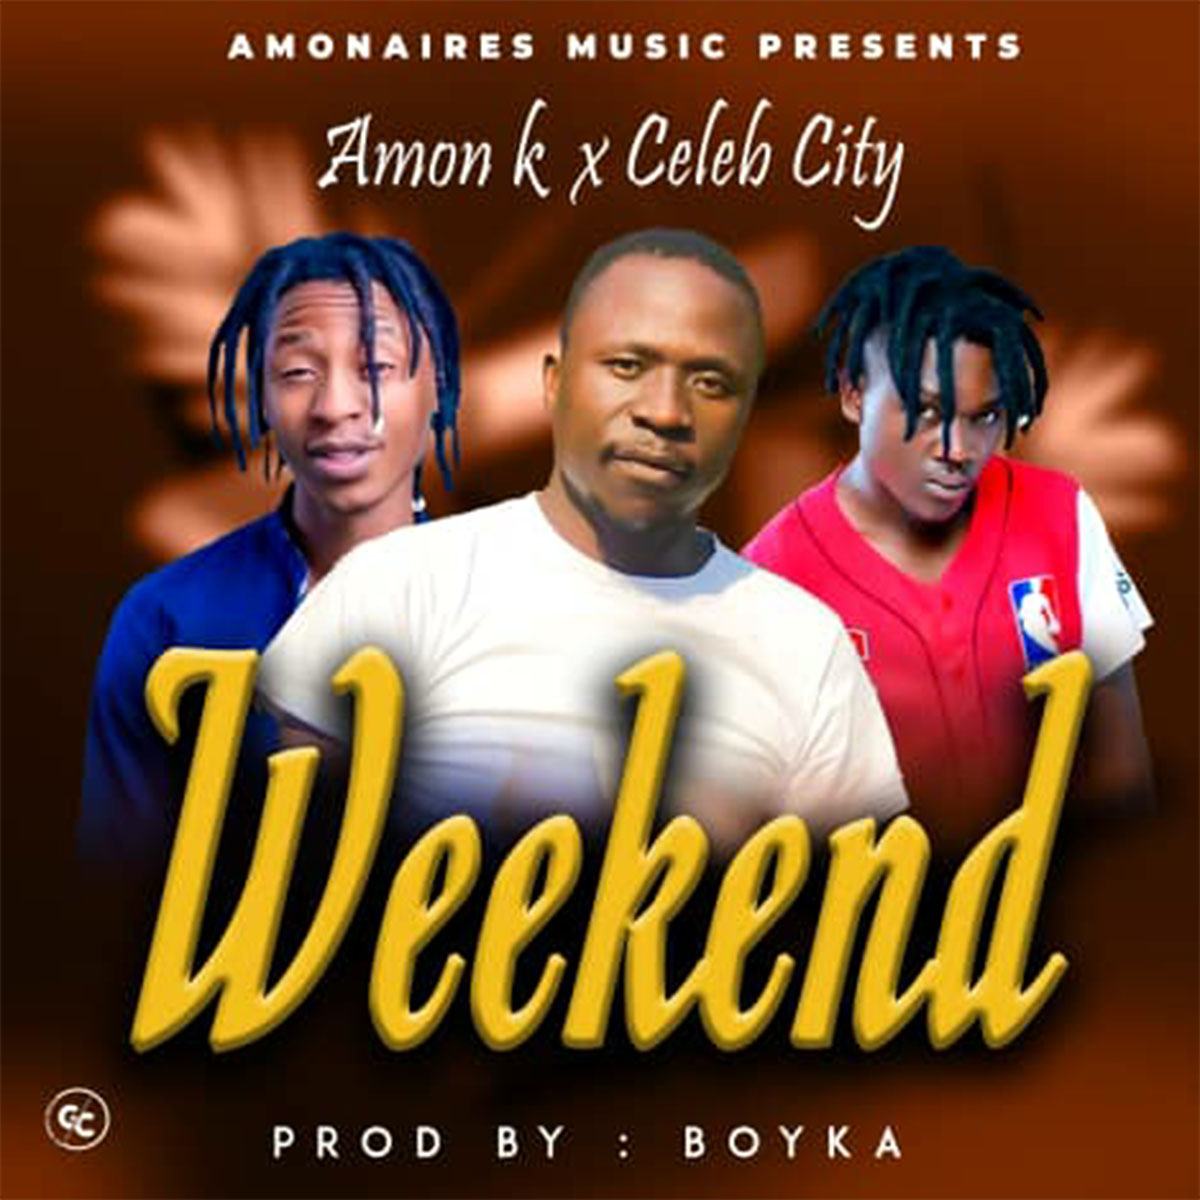 Amon K ft. Celeb City - Weekend